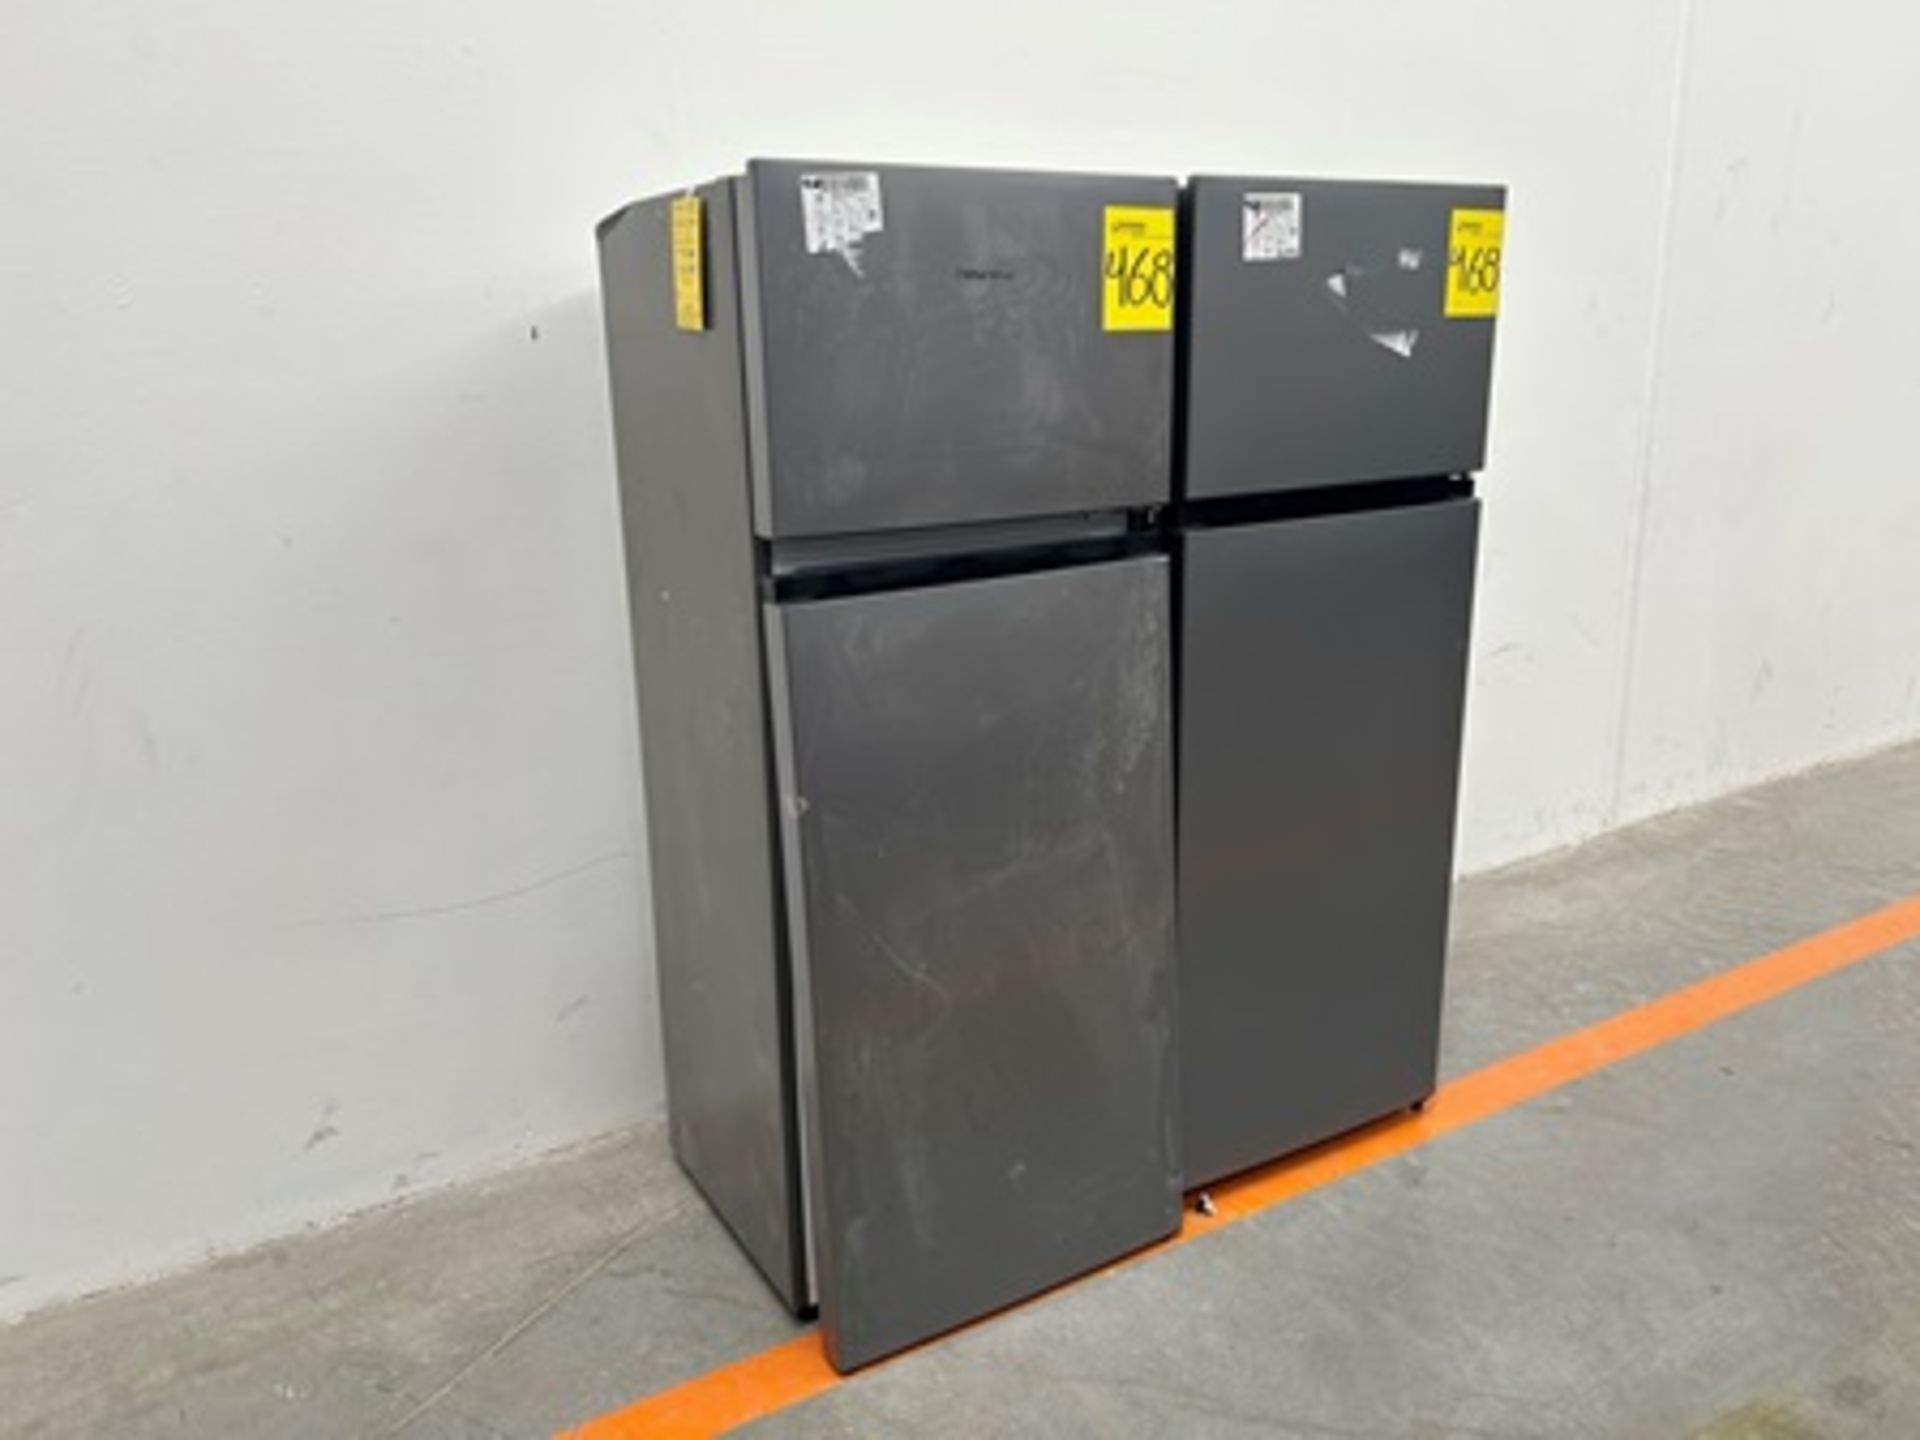 Lote de 2 refrigeradores contiene: 1 refrigerador Marca HISENSE, Modelo RT80D6AGX, Serie P20091, Co - Image 2 of 11